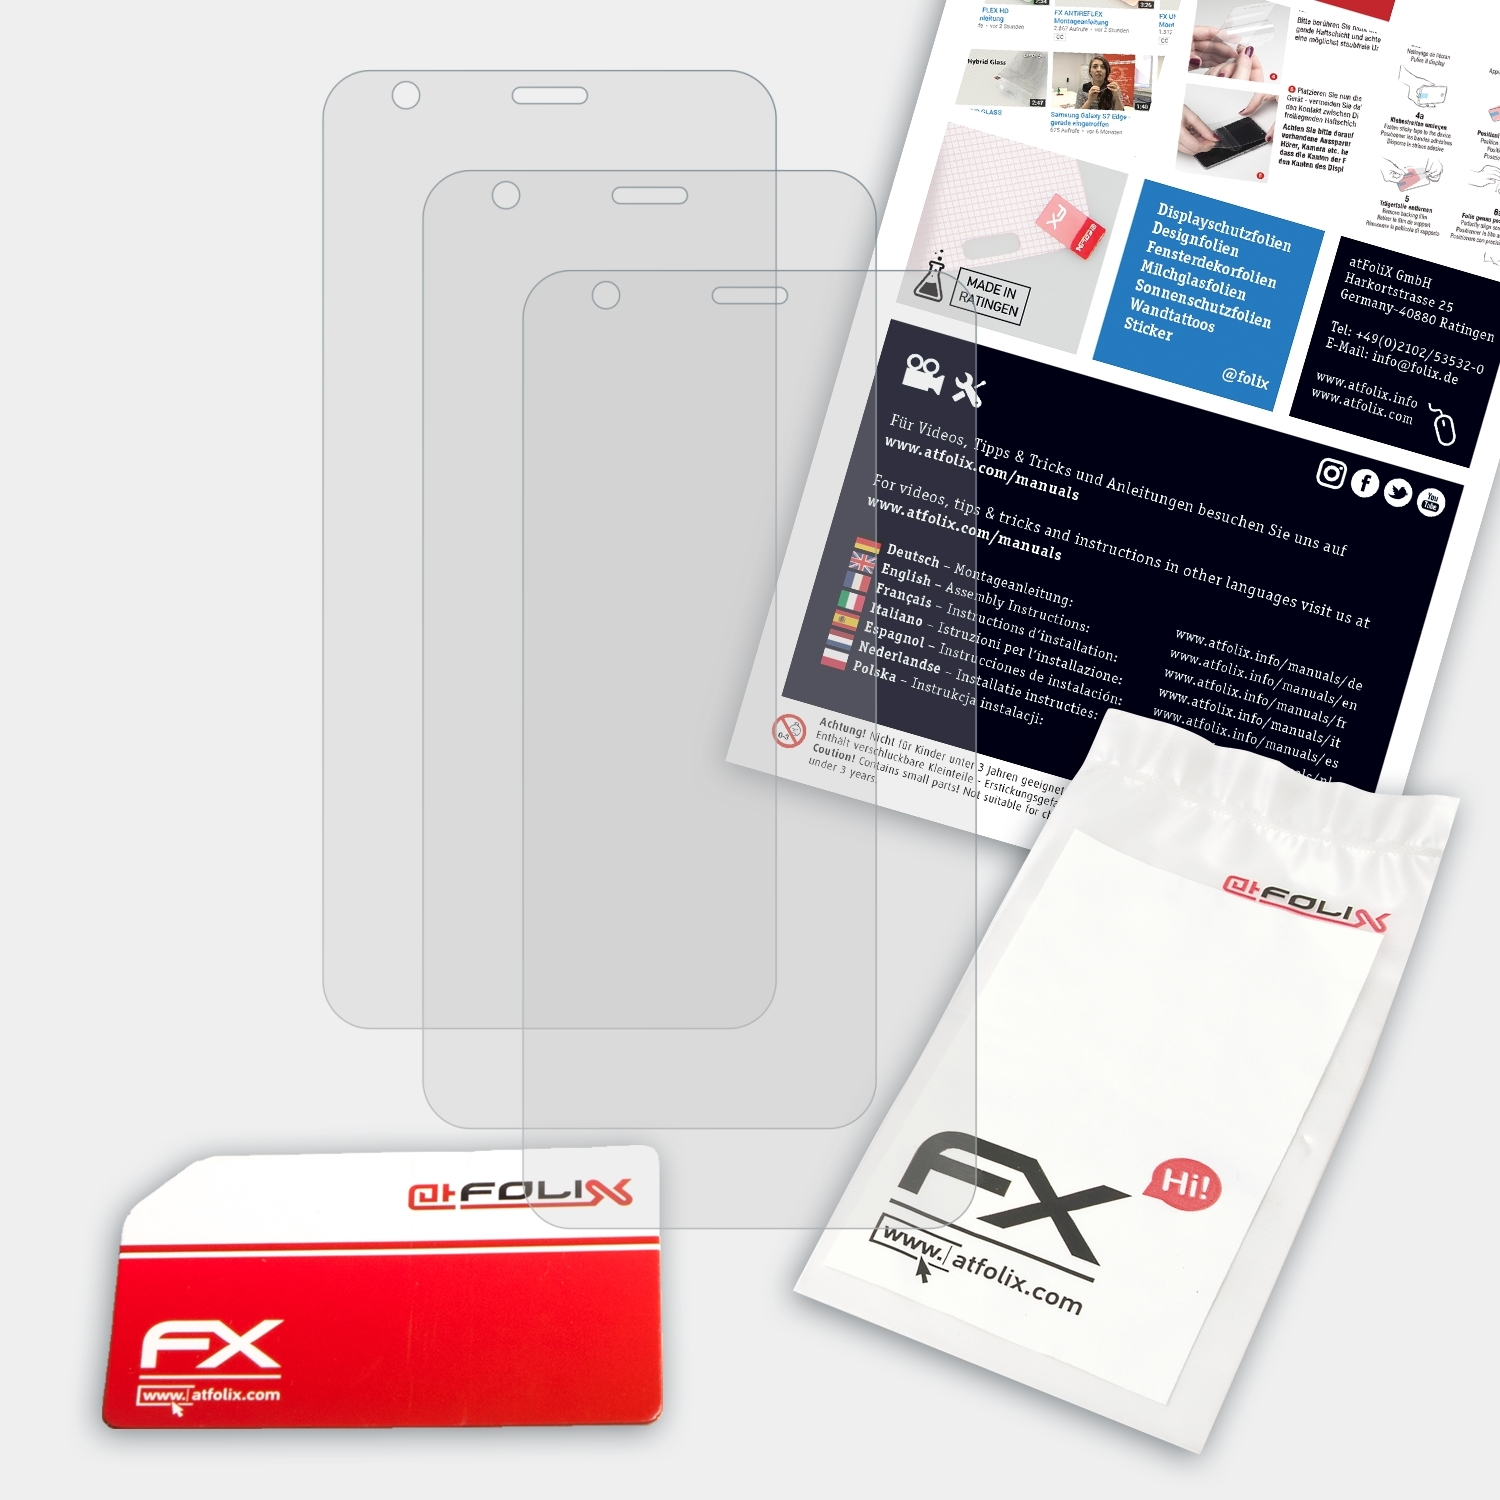 FX-Antireflex Displayschutz(für Neon LG ATFOLIX Plus) 3x